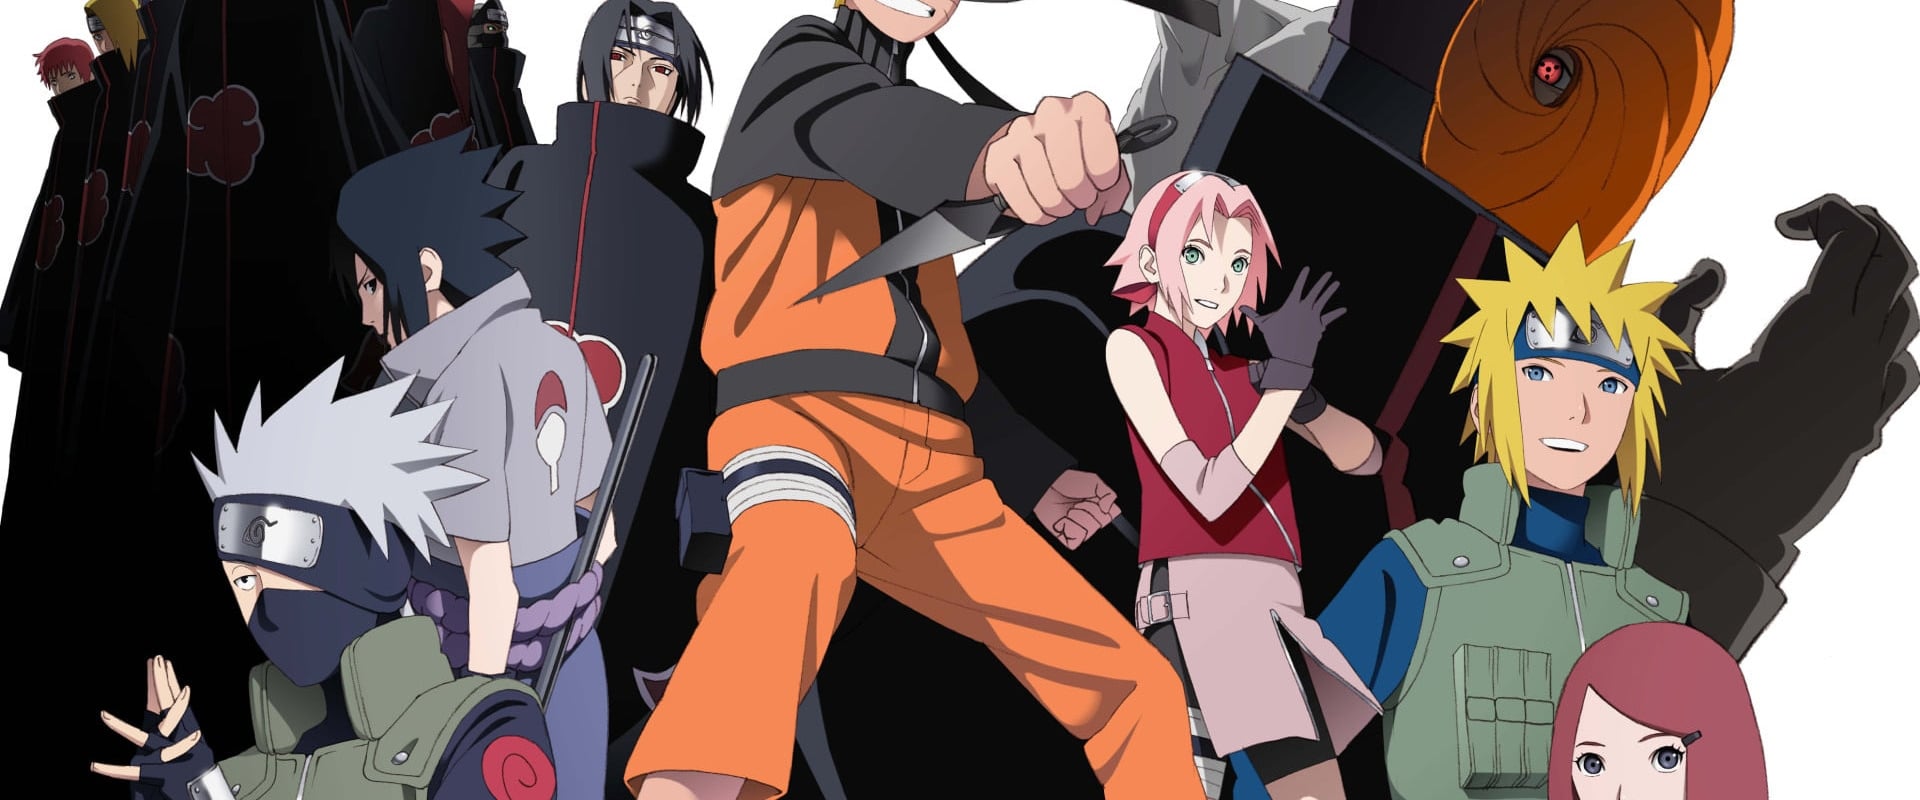 Naruto - La via dei ninja